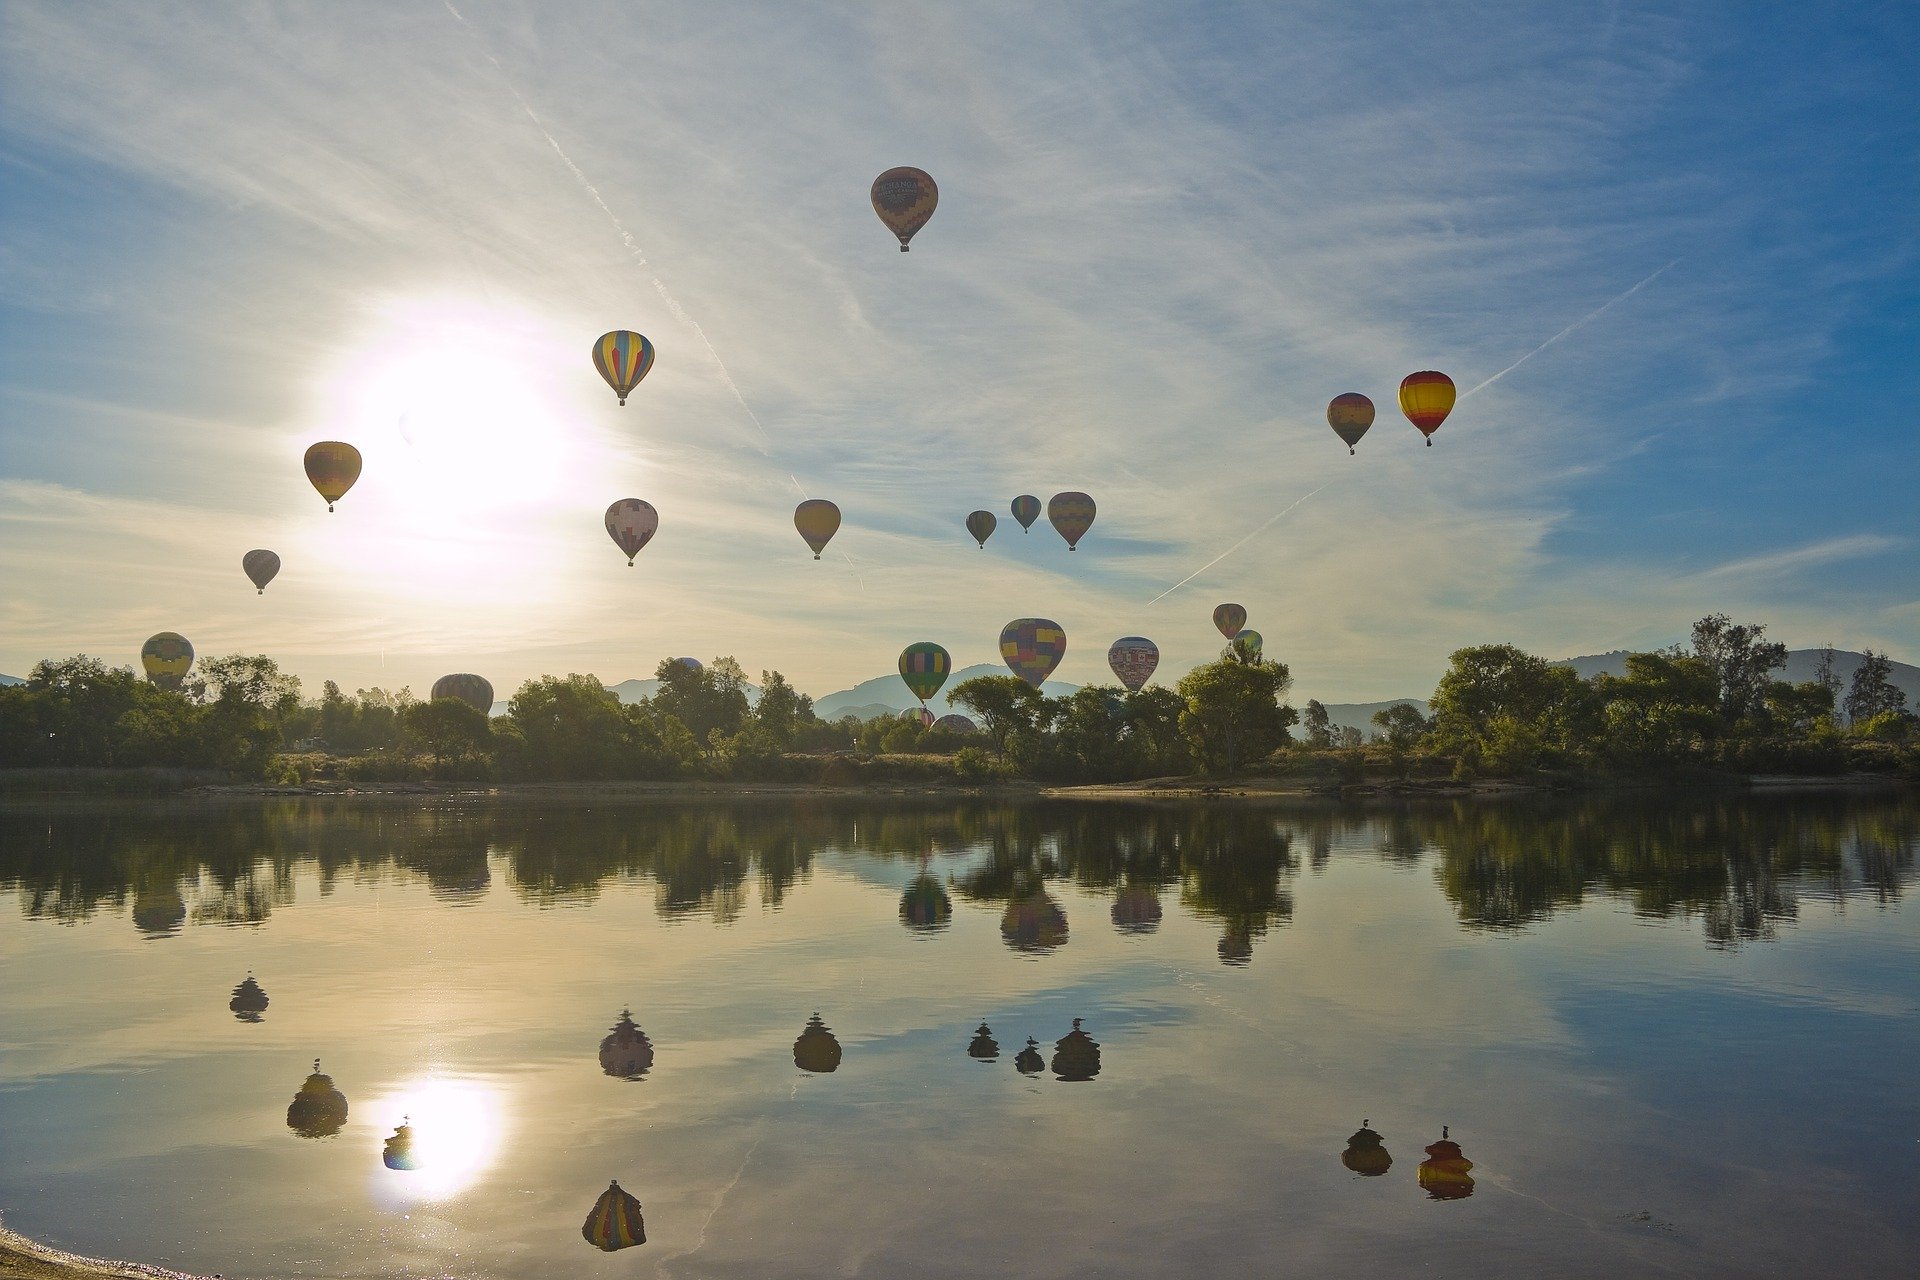 Hot Air Balloons in Temecula California - VeteranCarDonations.org